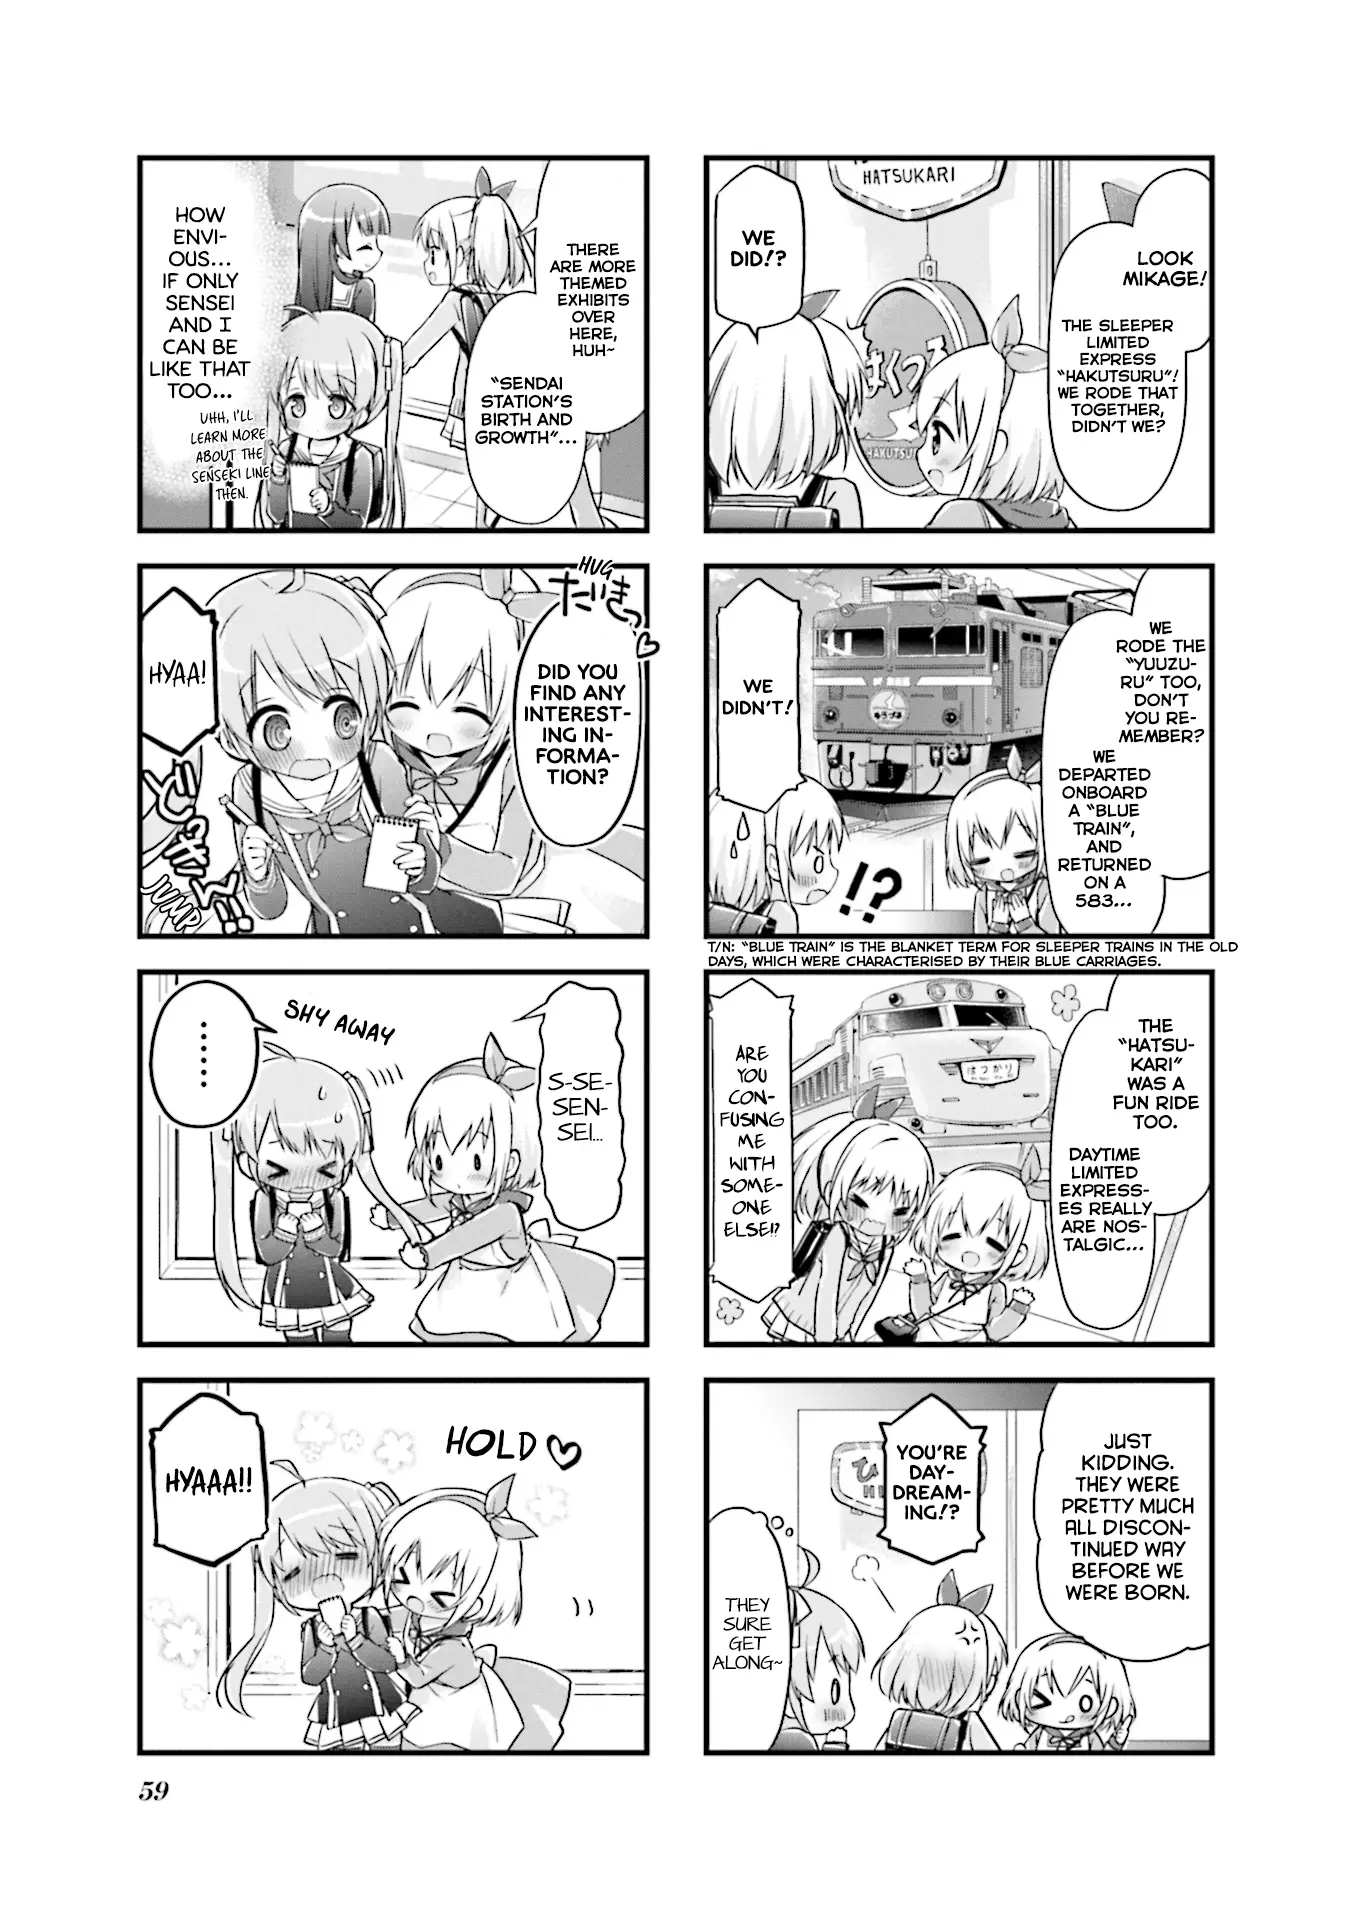 Hatsukoi*rail Trip - 7 page 3